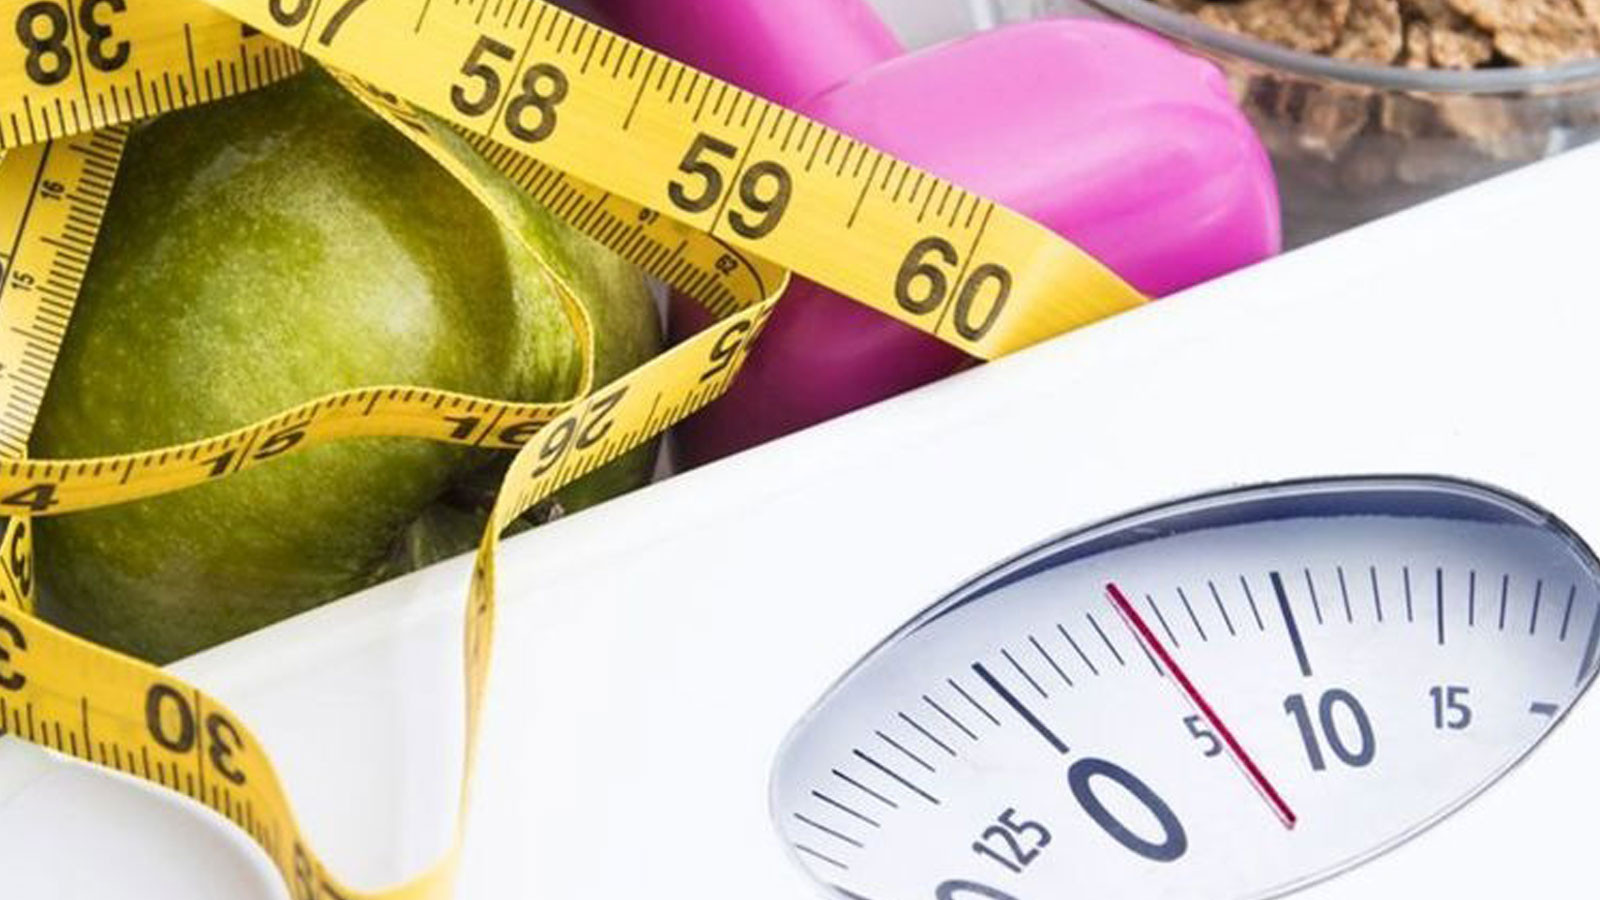 1 günde 1 kilo zayıflatan diyet listesi sayesinde günde 1 kilo hatta daha fazla zayıflayabilirsiniz.